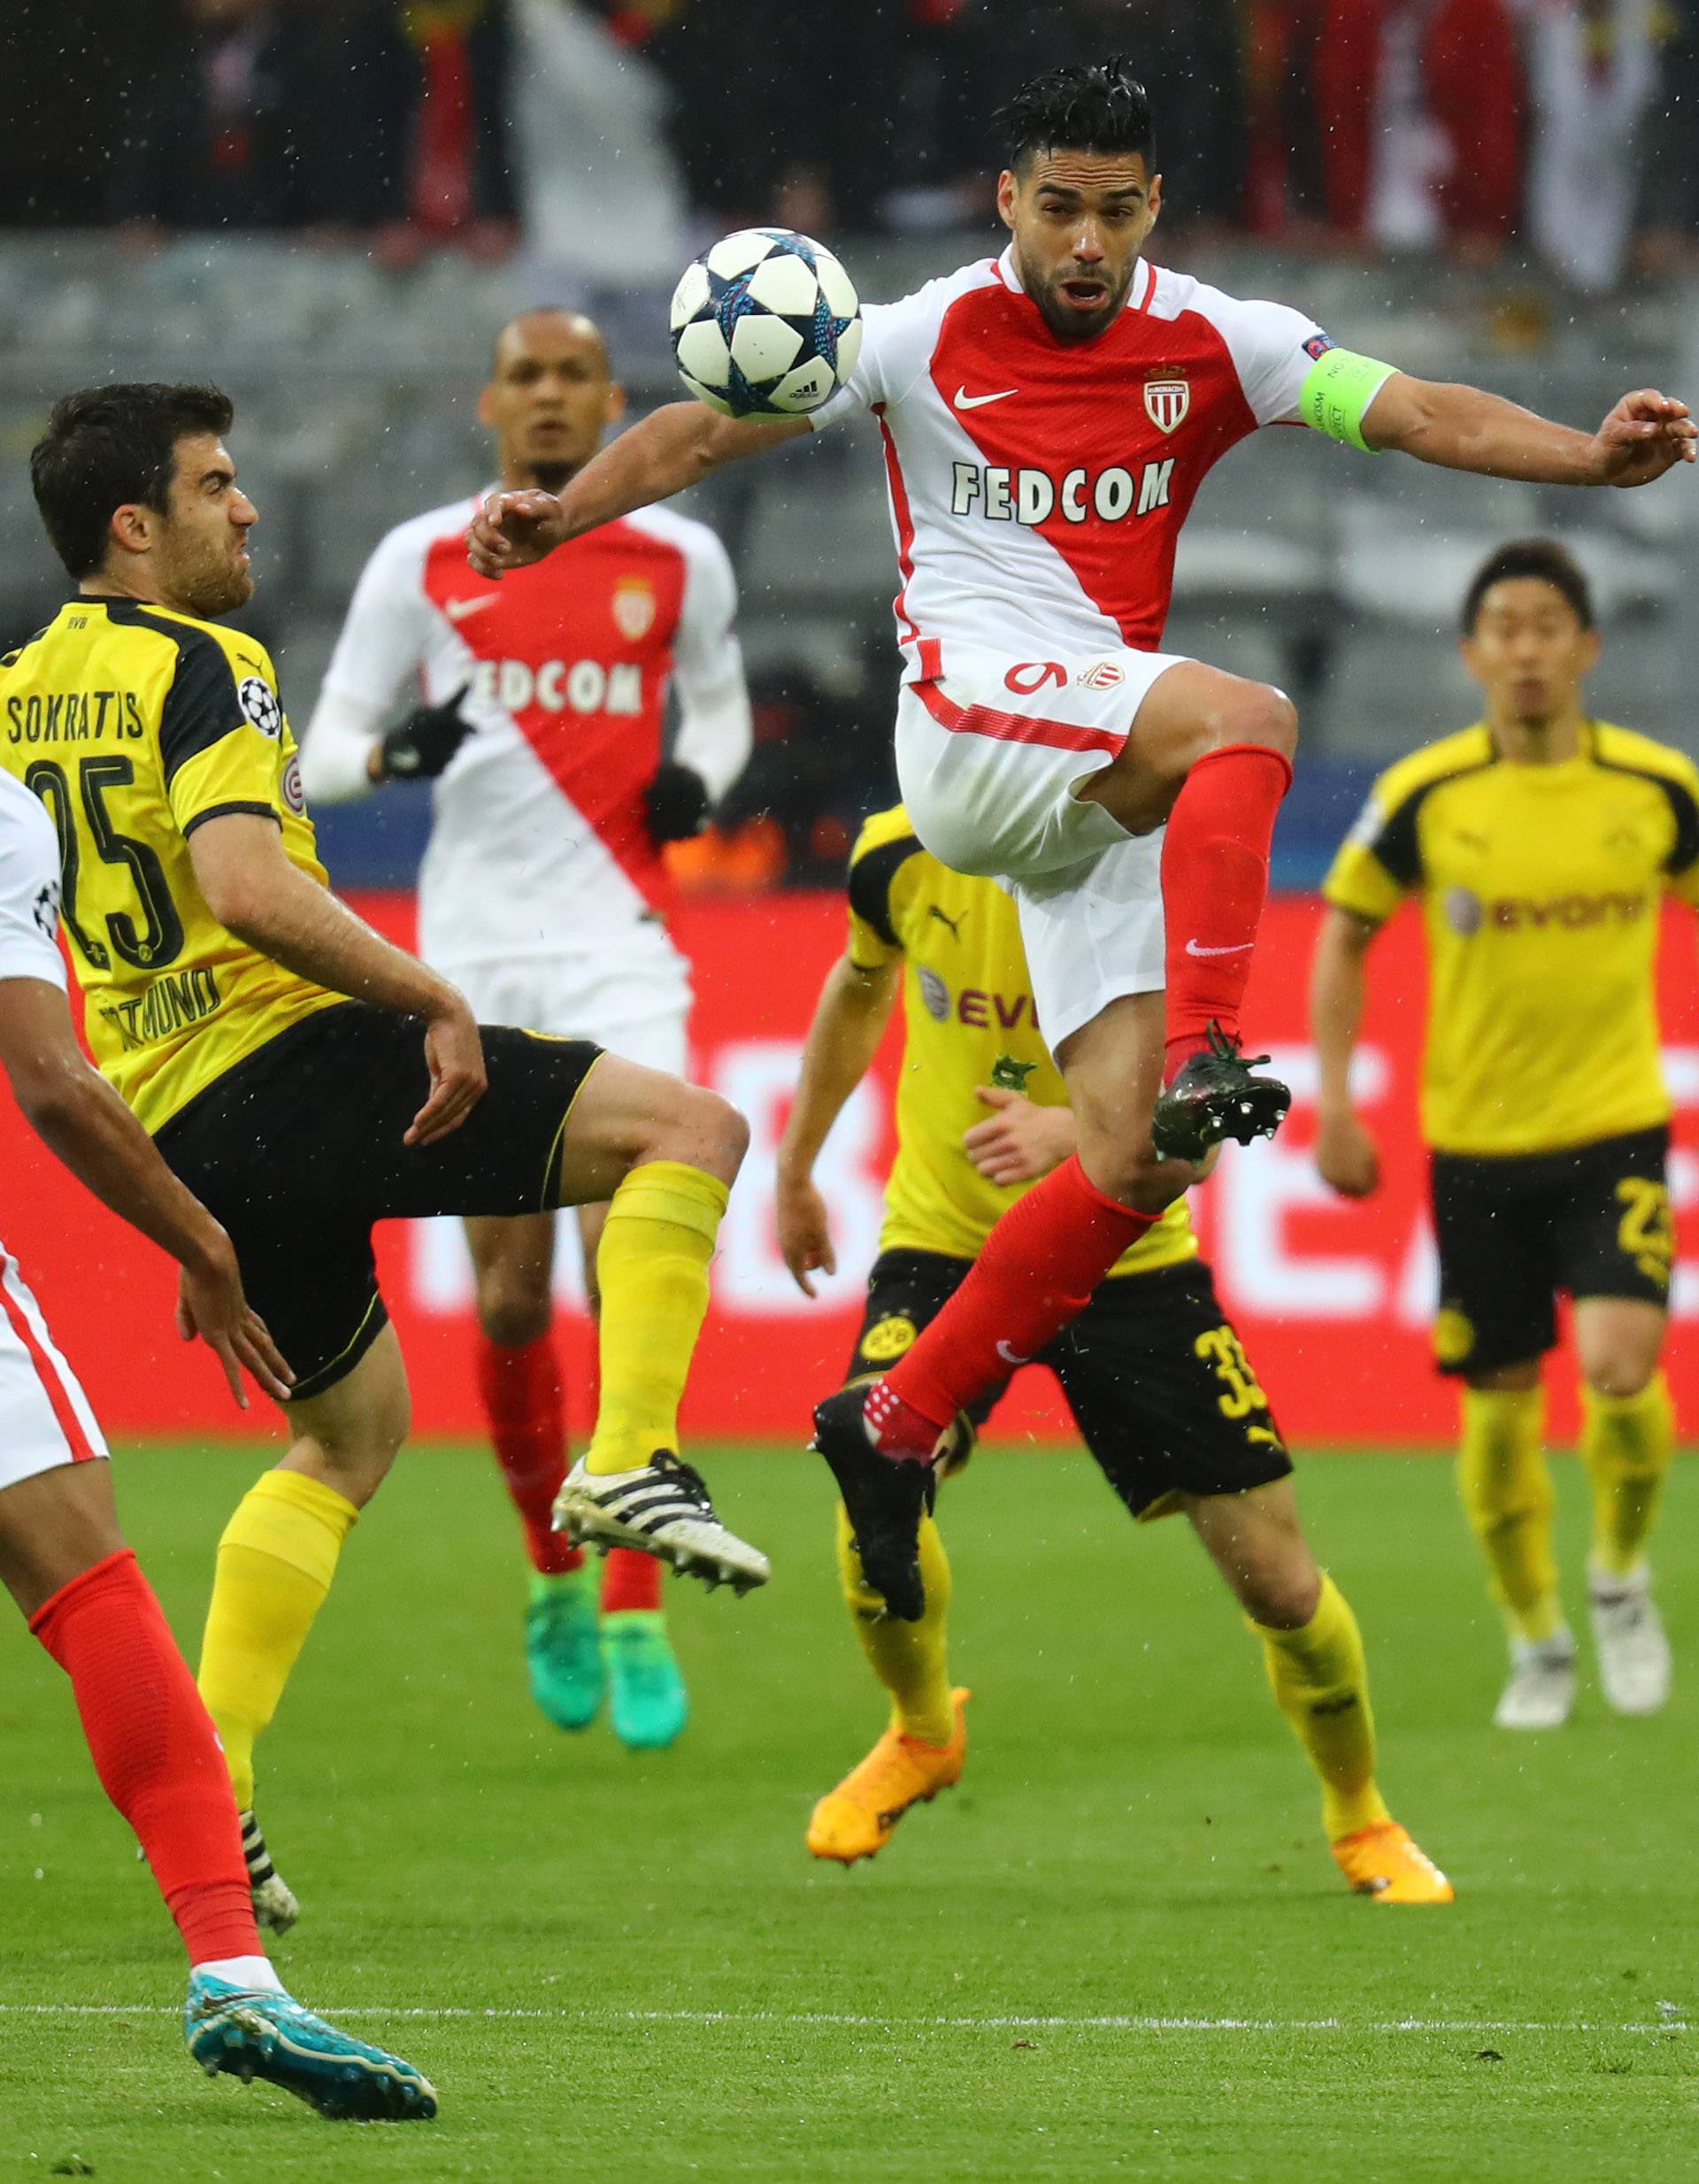 Monaco's Radamel Falcao in action with Borussia Dortmund's Sokratis Papastathopoulos